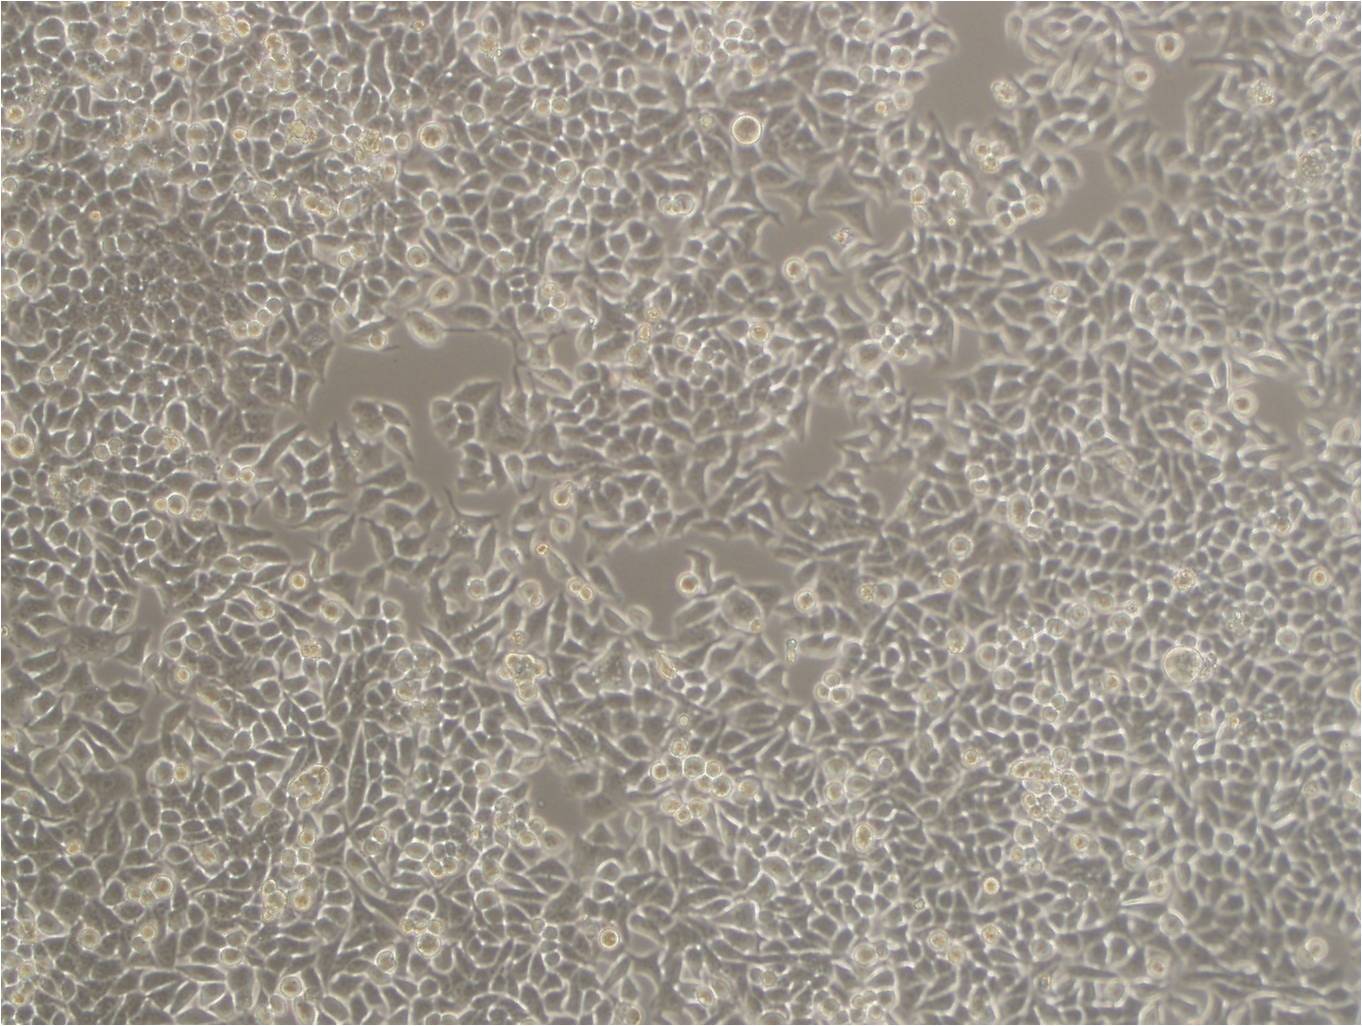 NPA epithelioid cells人甲状腺乳头状癌细胞系,NPA epithelioid cells